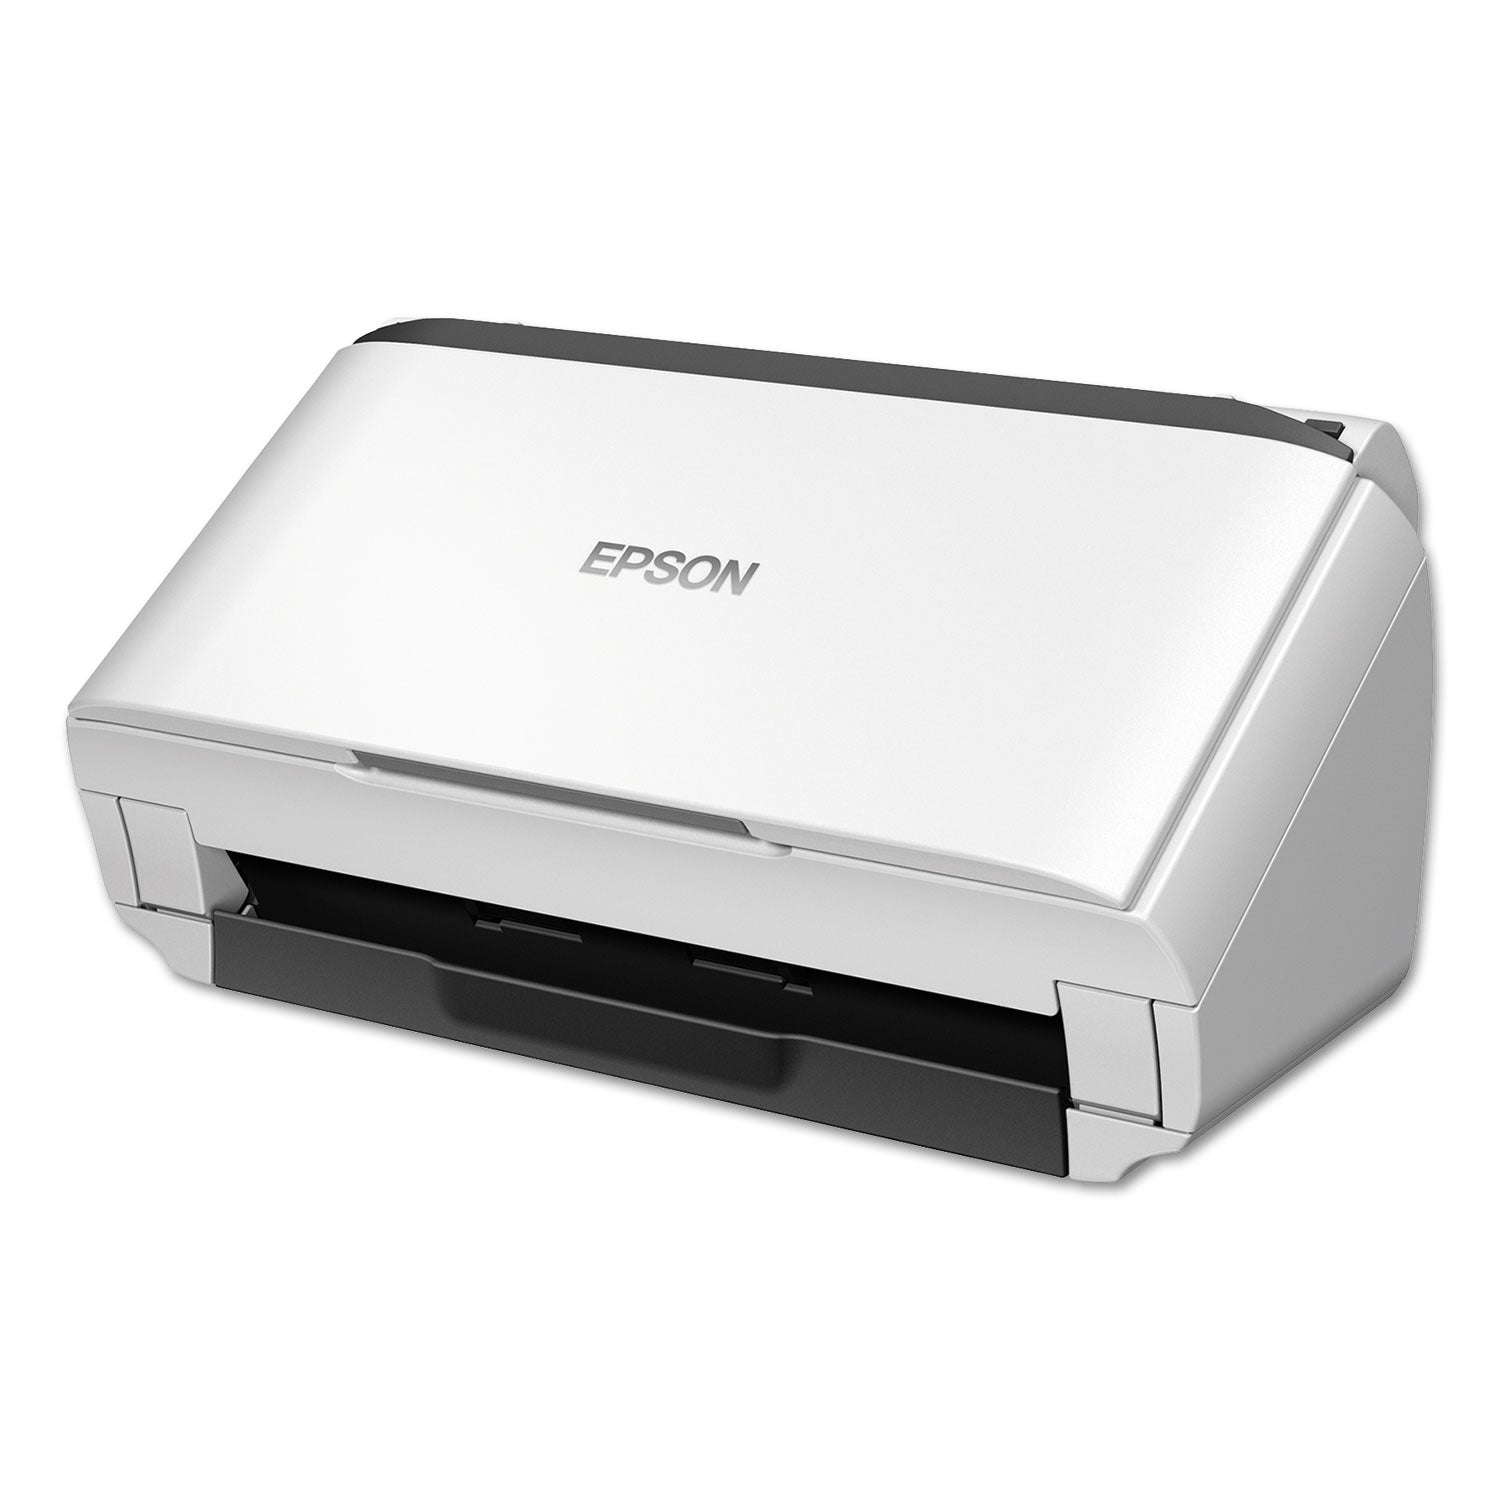 ds-410-document-scanner-600-dpi-optical-resolution-50-sheet-duplex-auto-document-feeder_epsb11b249201 - 7